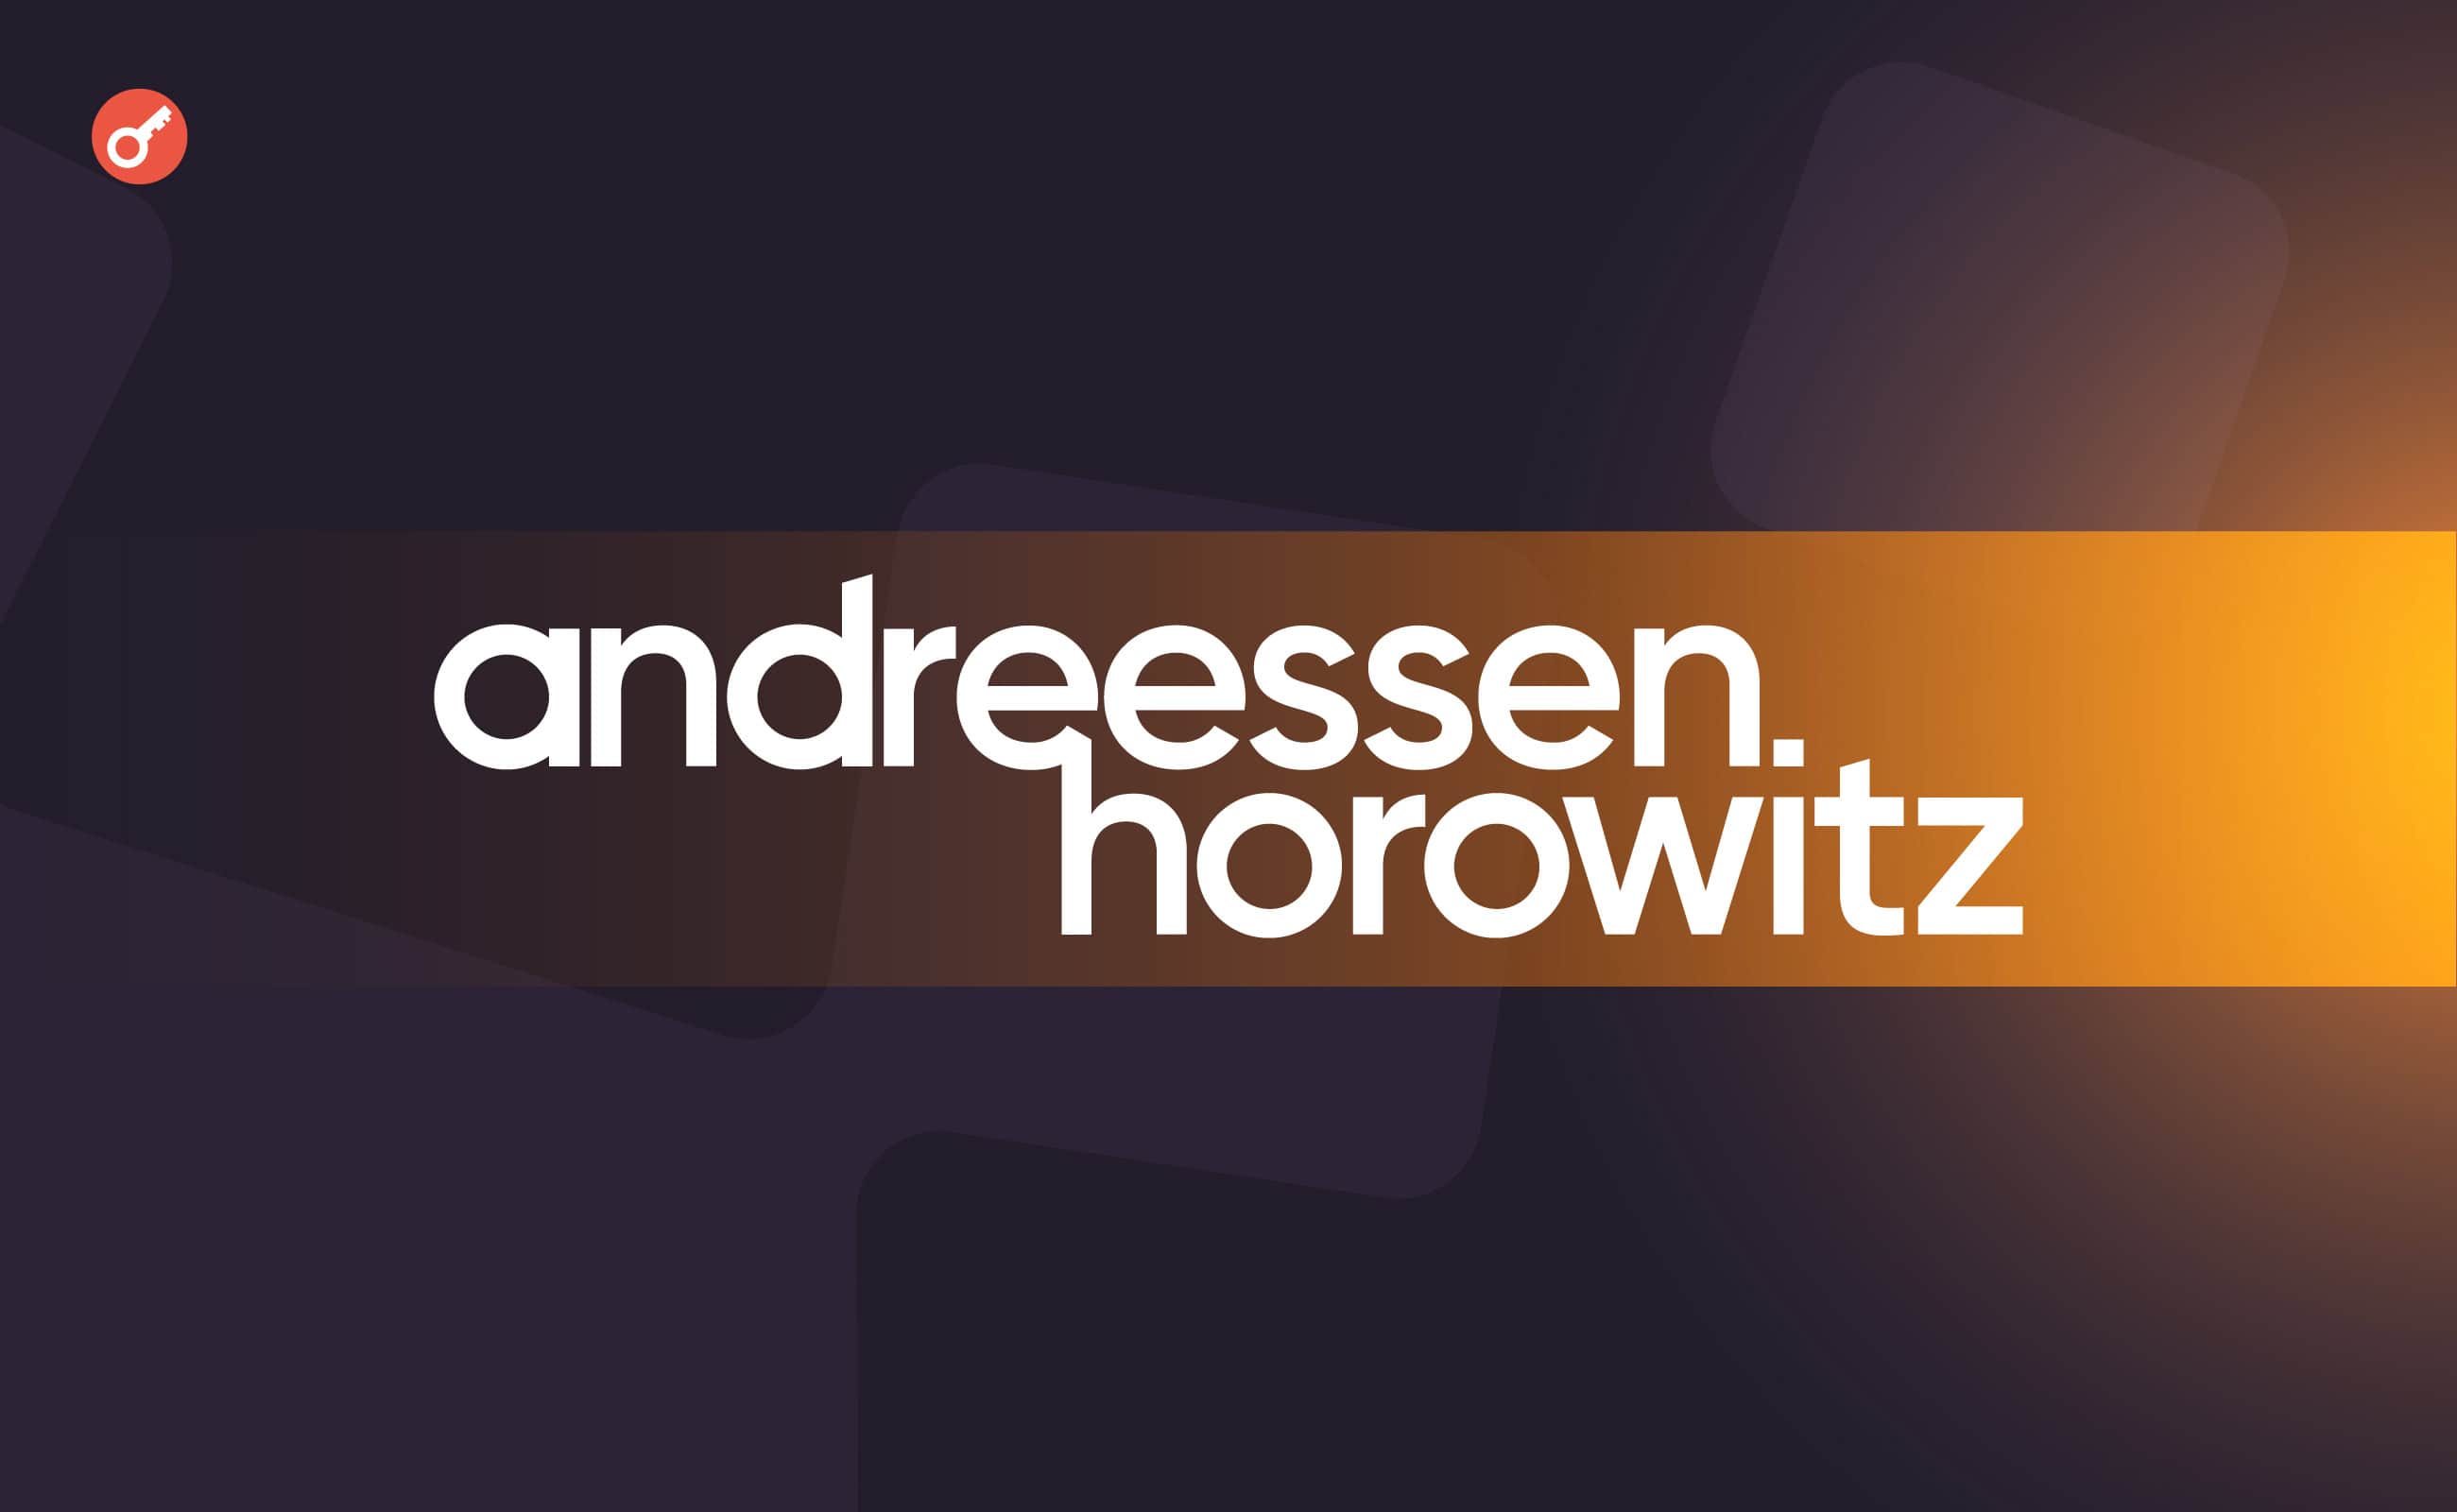 Andreessen Horowitz залучила $7,2 млрд інвестицій. Головний колаж новини.